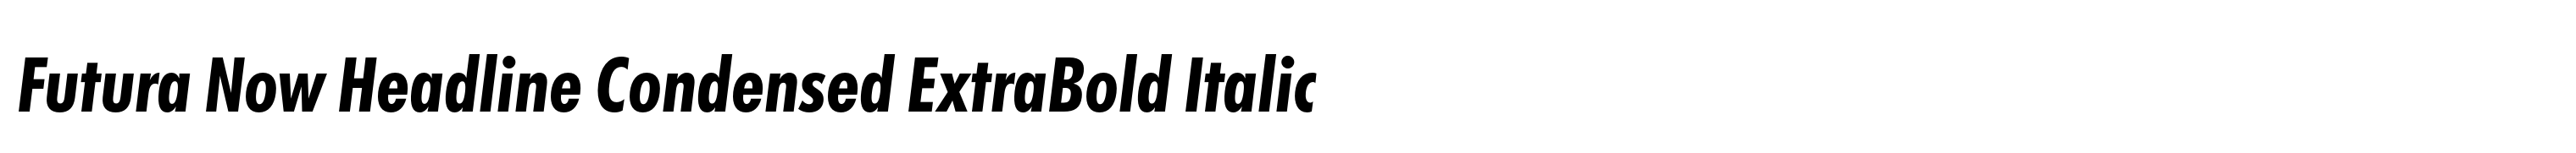 Futura Now Headline Condensed ExtraBold Italic